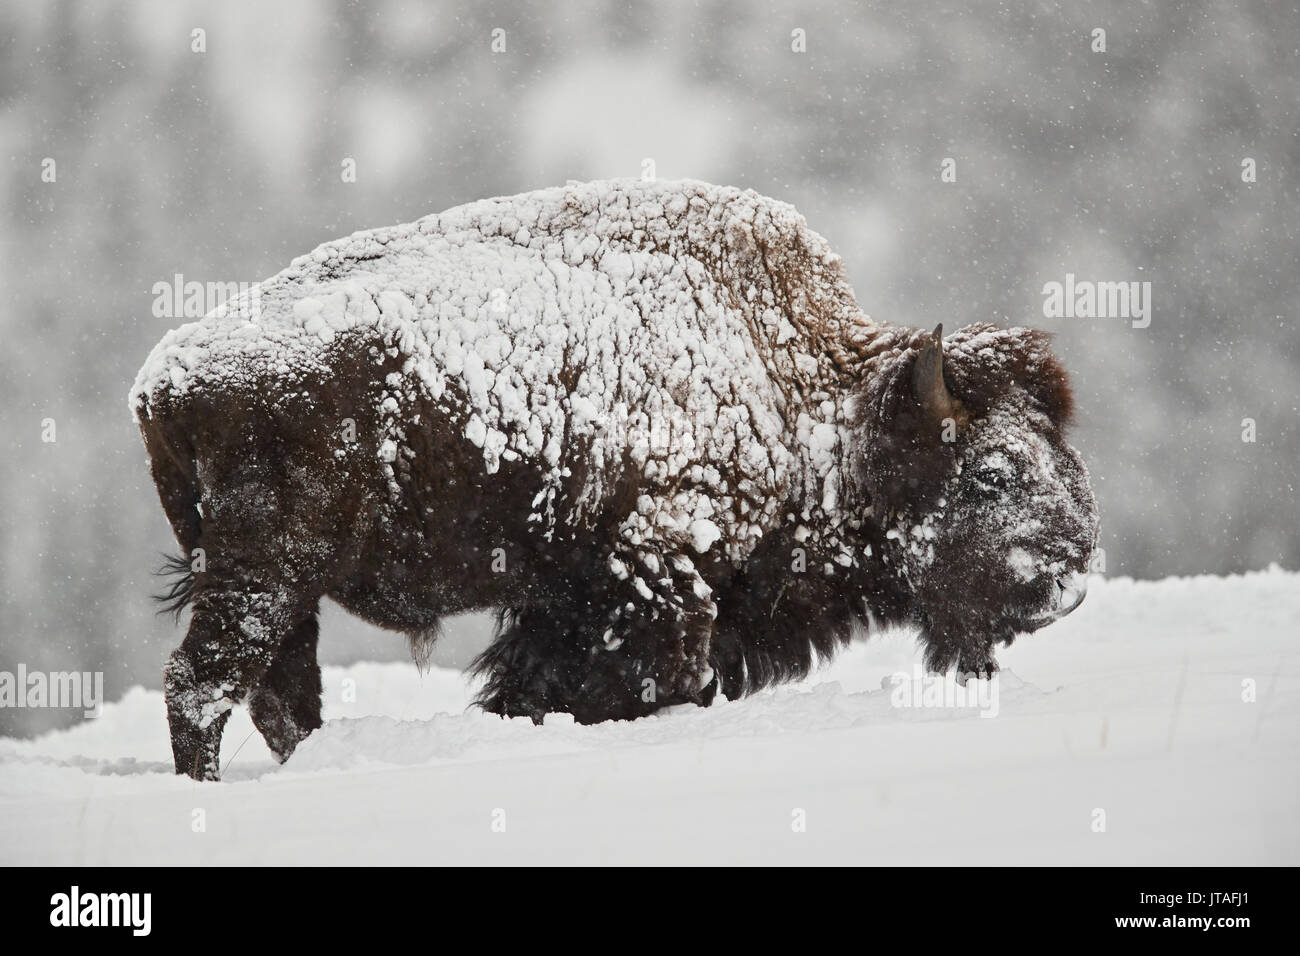 Bisonte (bisonte bisonte) toro cubierto de nieve en la nieve en el invierno, Parque Nacional de Yellowstone, Wyoming, EE.UU., América del Norte Foto de stock